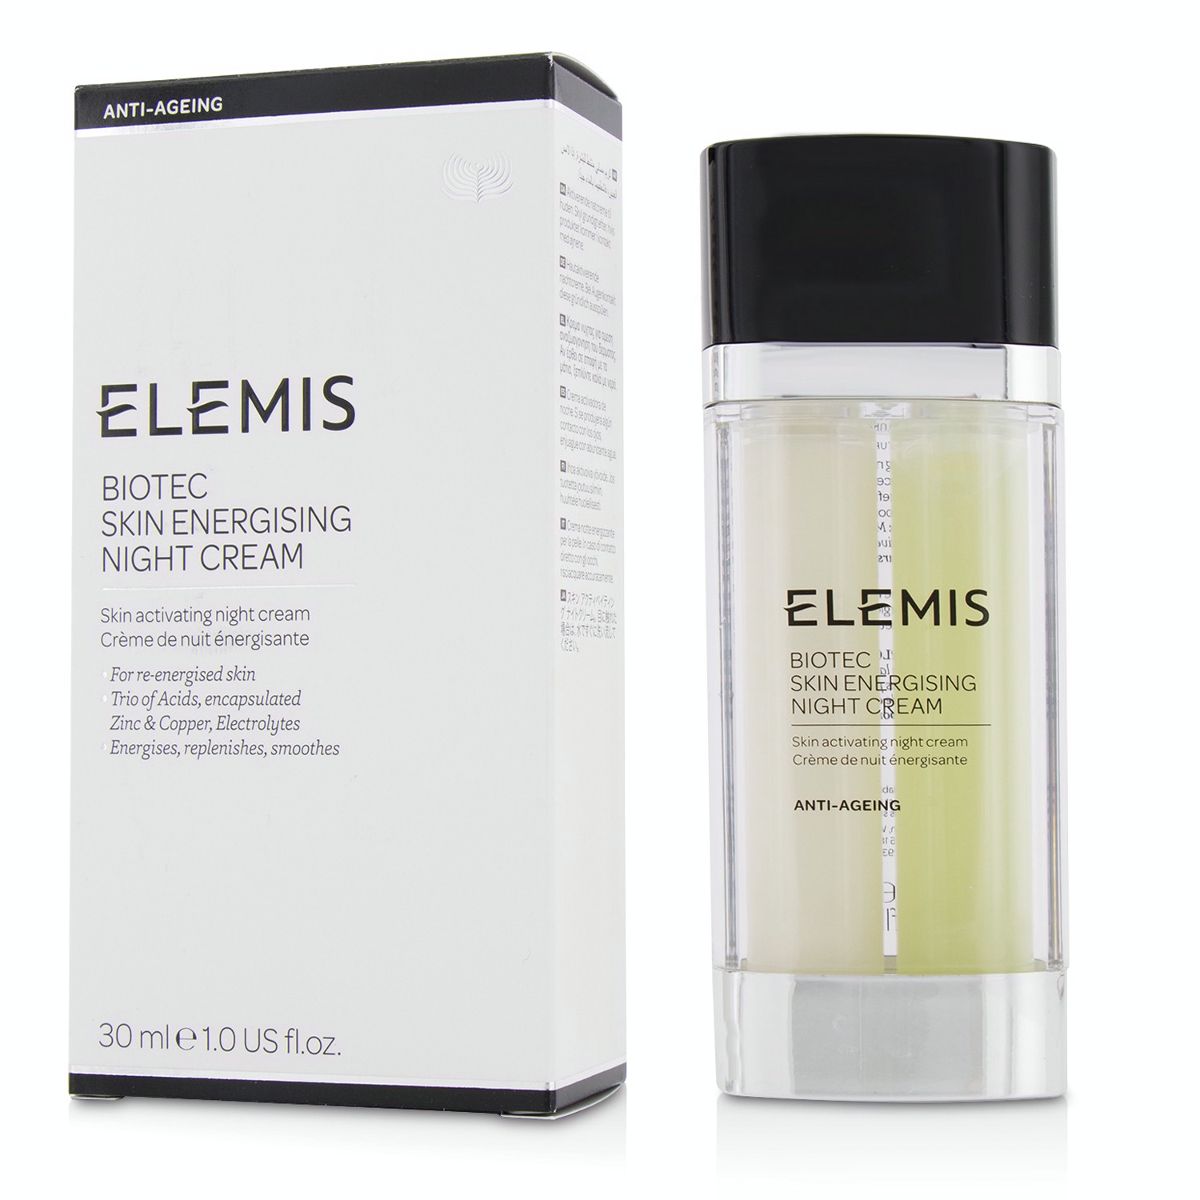 BIOTEC Skin Energising Night Cream Elemis Image